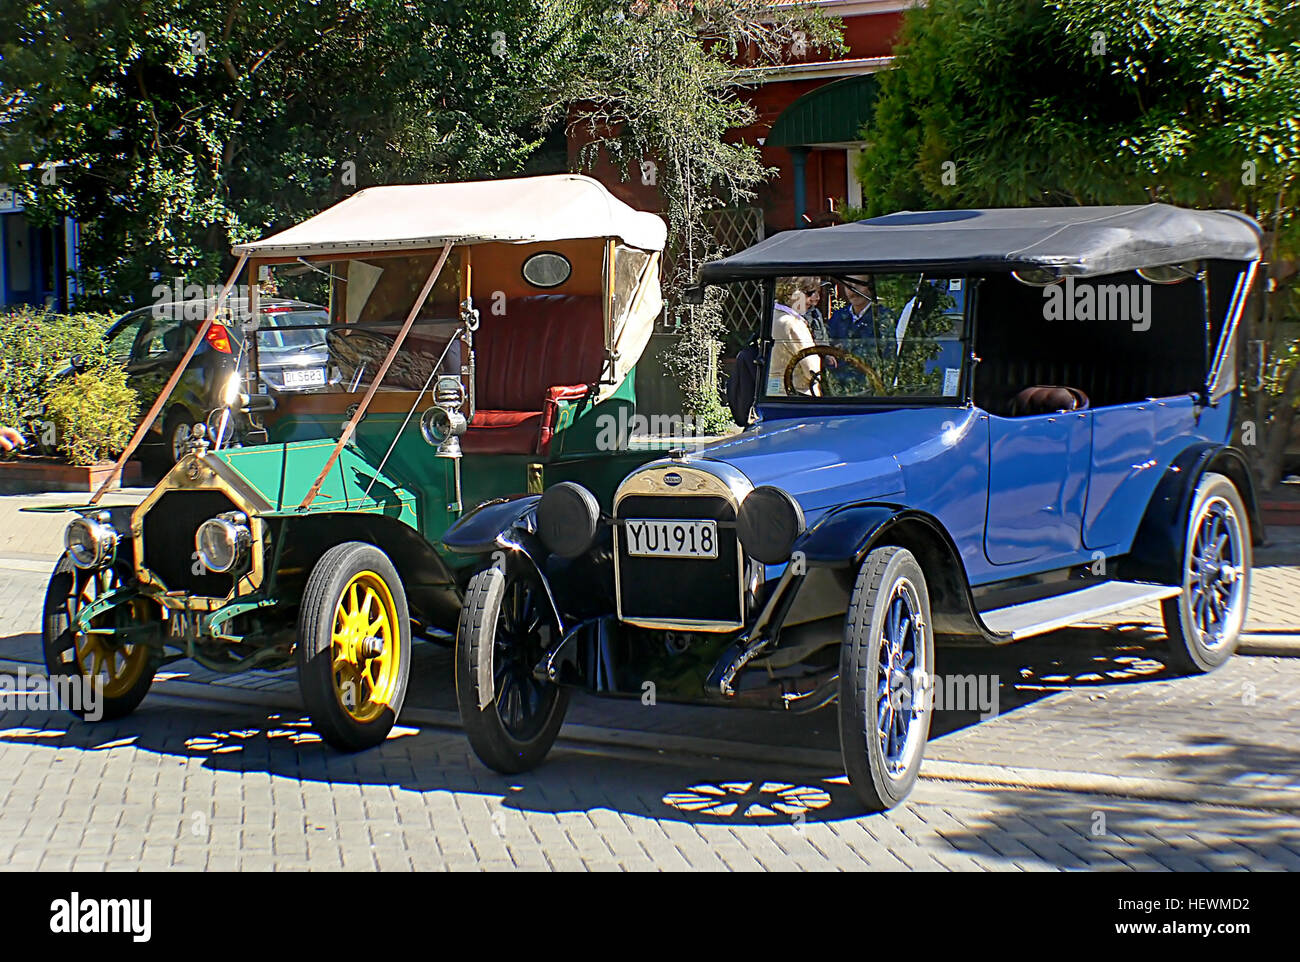 Icaciones (,),azul,Ford Car Shows,autos antiguos,los coches antiguos Foto de stock